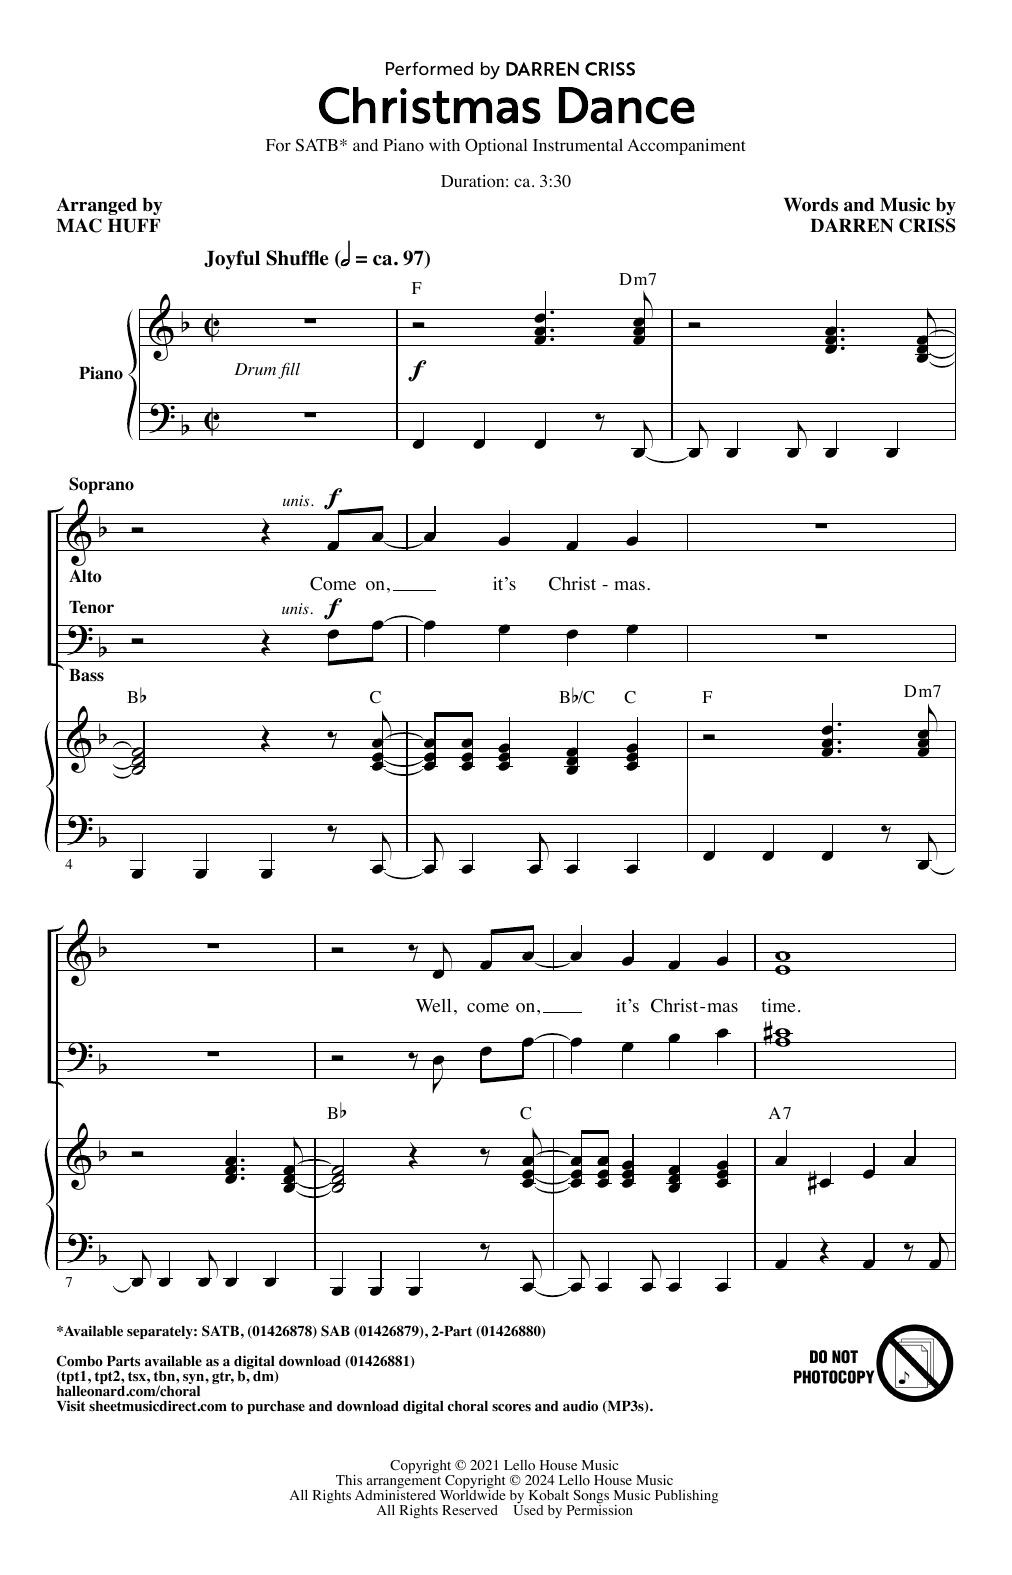 Darren Criss Christmas Dance (arr. Mac Huff) sheet music notes and chords arranged for 2-Part Choir